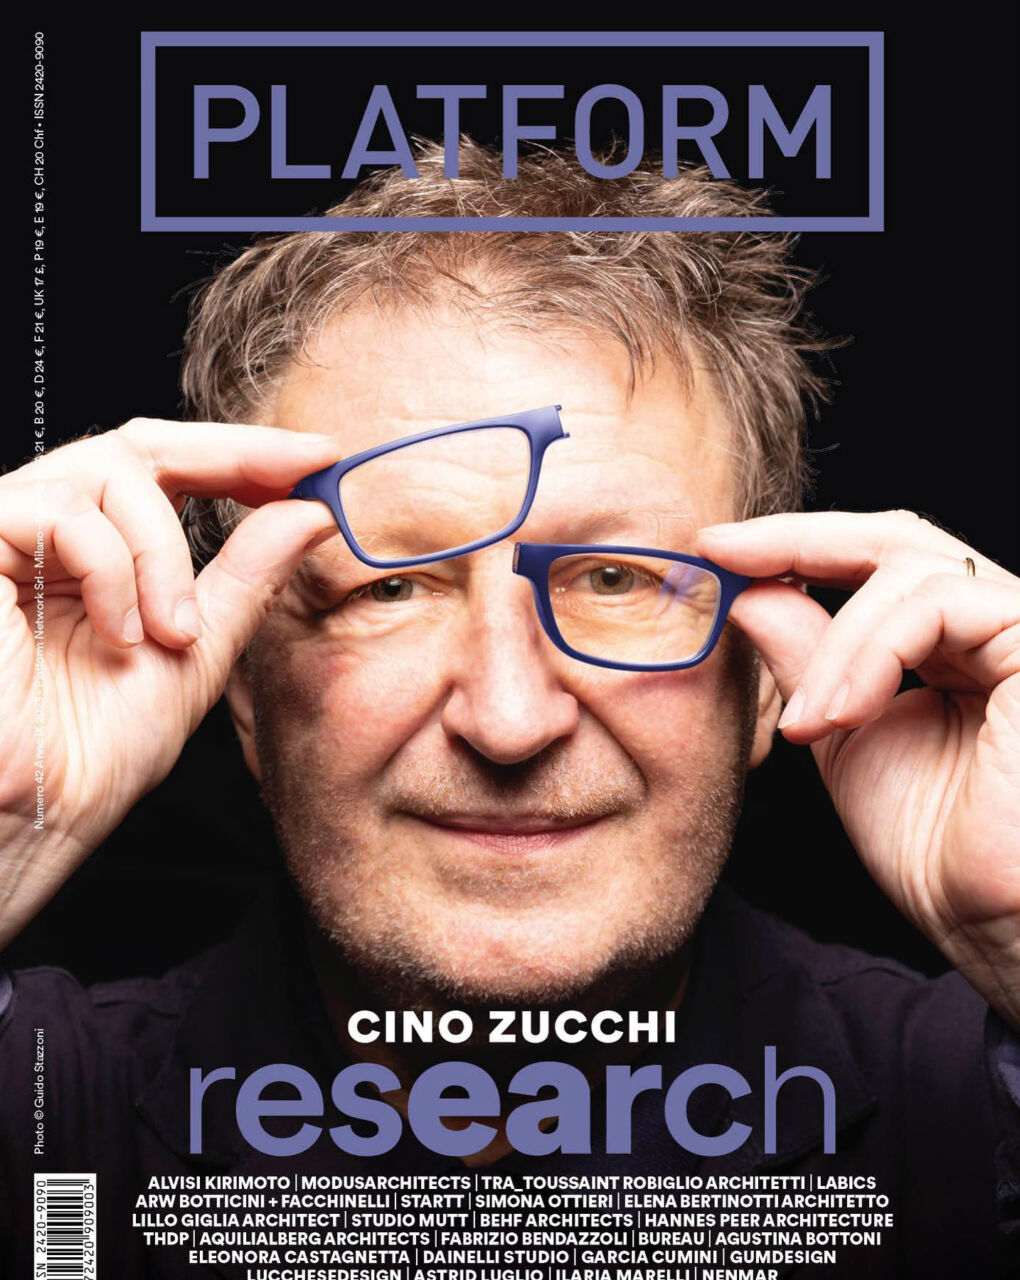 Cino Zucchi on Platform